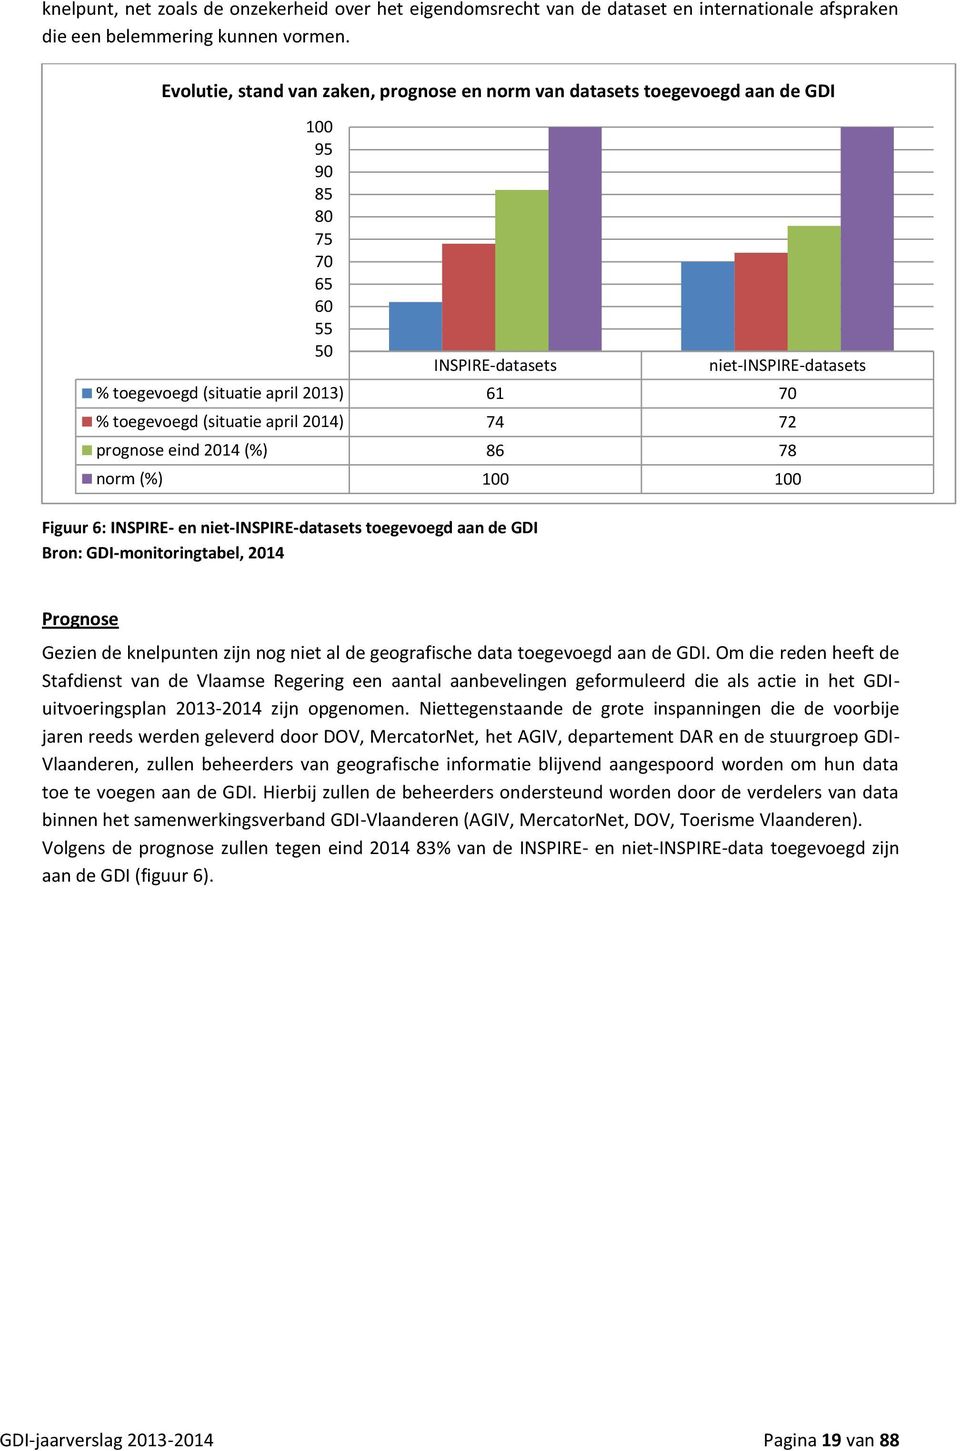 Bron: GDI-monitoringtabel, 2014 niet-inspire-datasets % toegevoegd (situatie april 2013) 61 70 % toegevoegd (situatie april 2014) 74 72 prognose eind 2014 (%) 86 78 norm (%) 100 100 Prognose Gezien